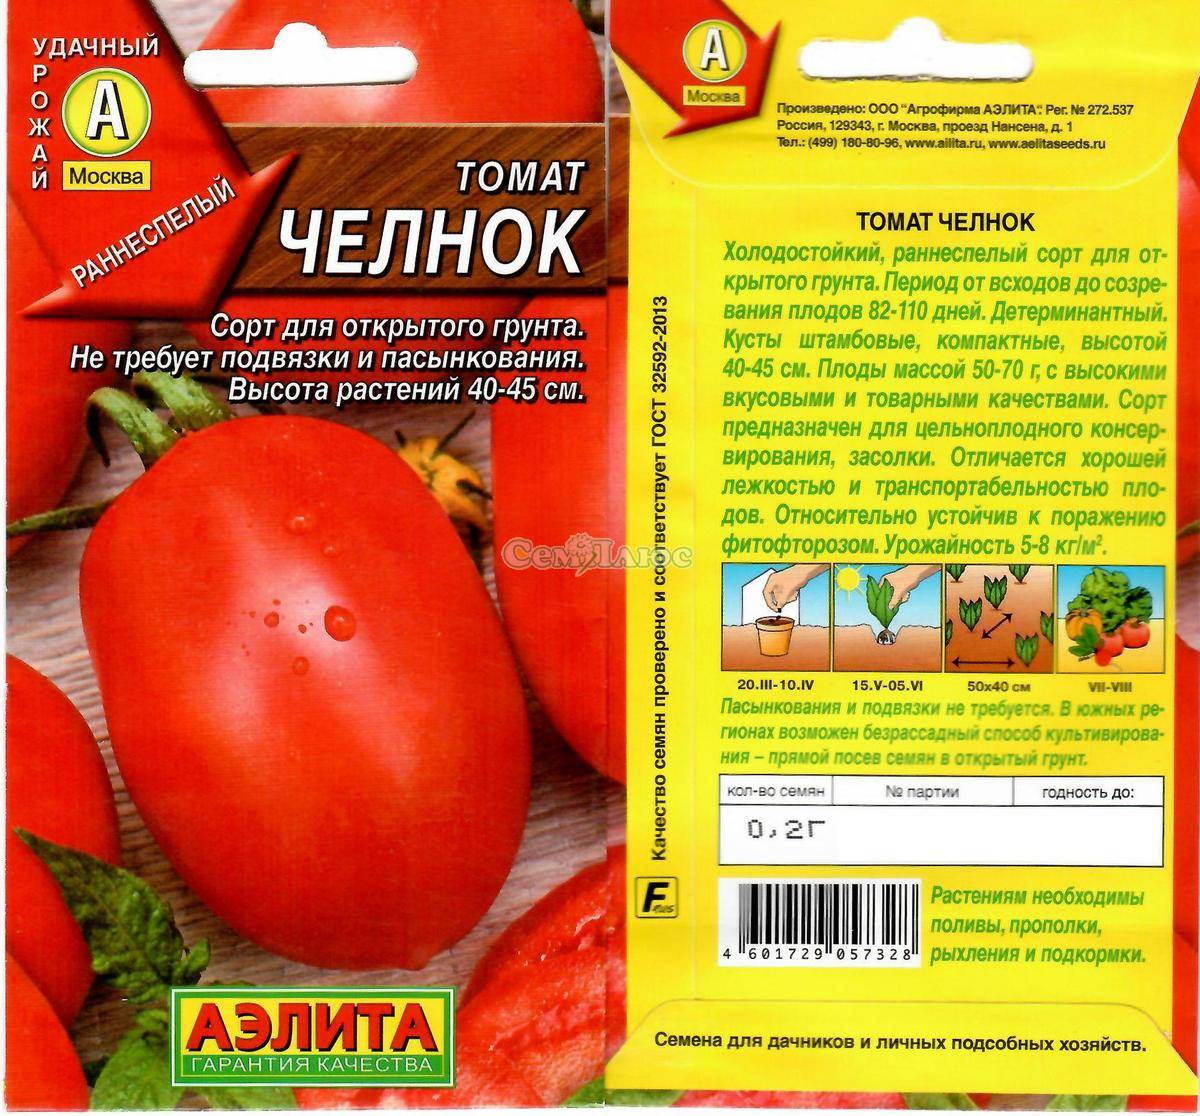 Собираем урожаи не выходя из квартиры — томат челнок: описание сорта и особенности выращивания